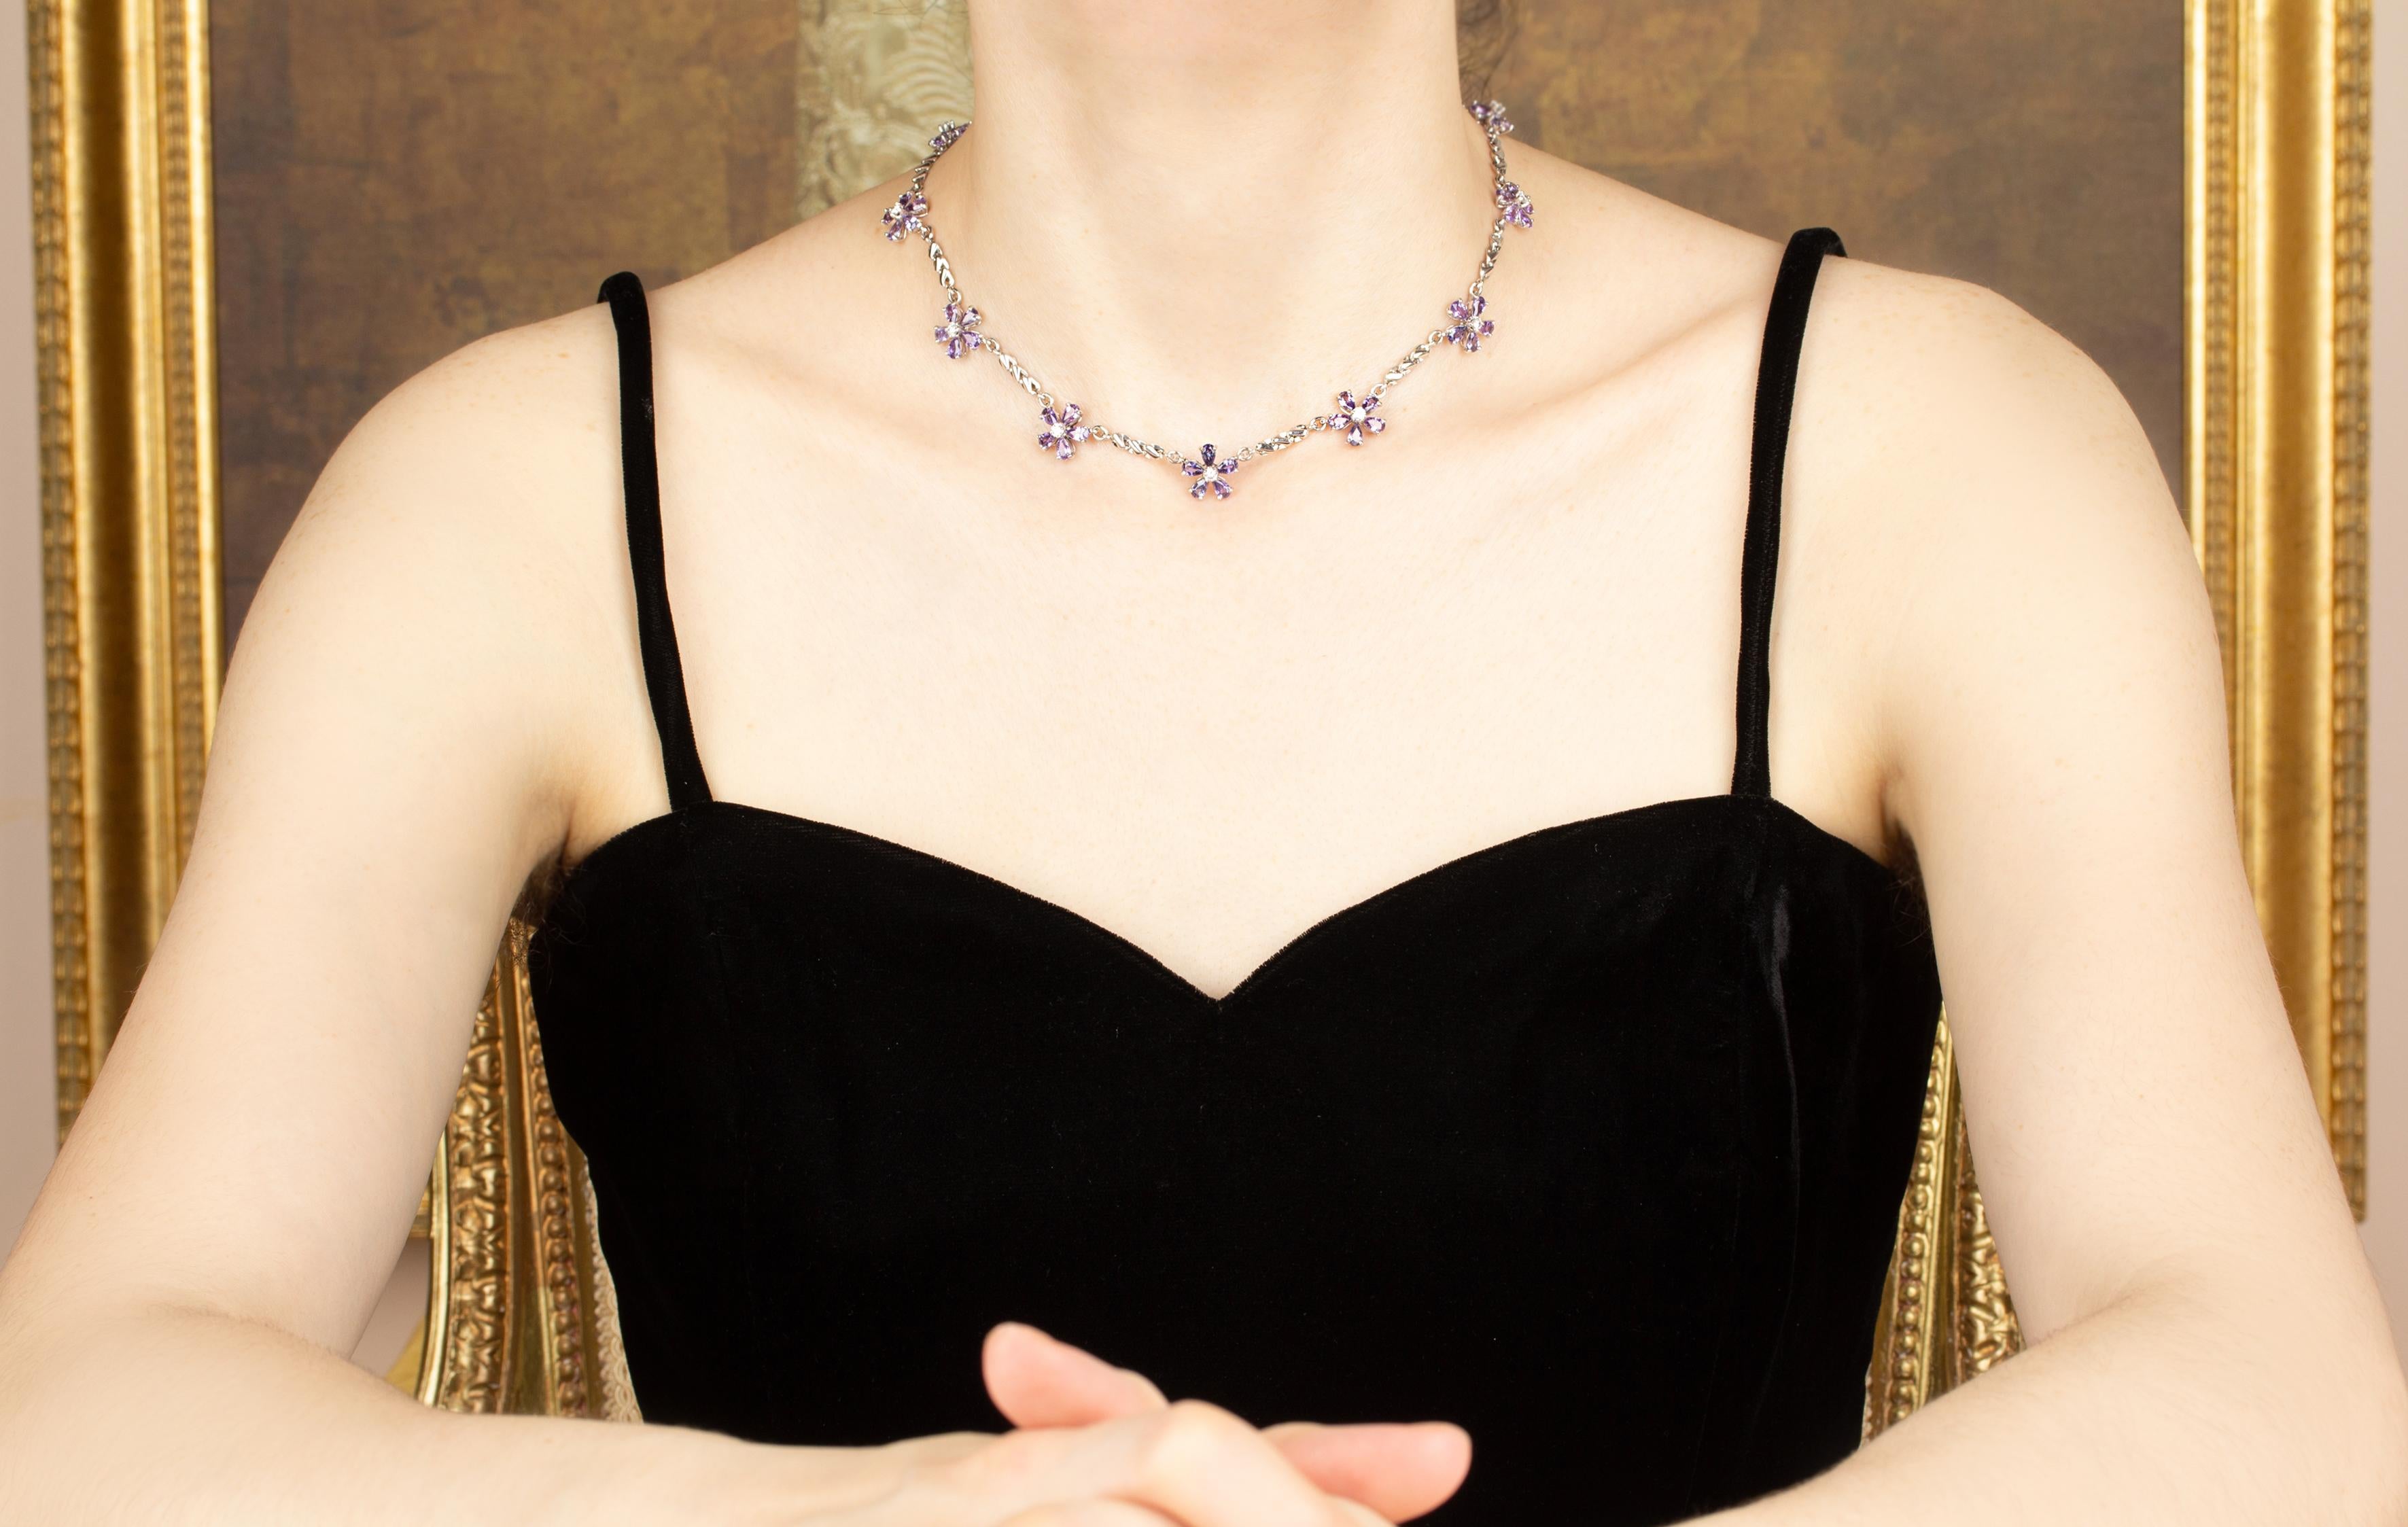 Le collier de saphirs violets comporte 10 fleurs serties de saphirs facettés en forme de goutte de couleur brillante pour un poids total de 13,30 carats. Le design est complété par 0,90 carats de diamants ronds de qualité supérieure (F/G-VVS).
Le